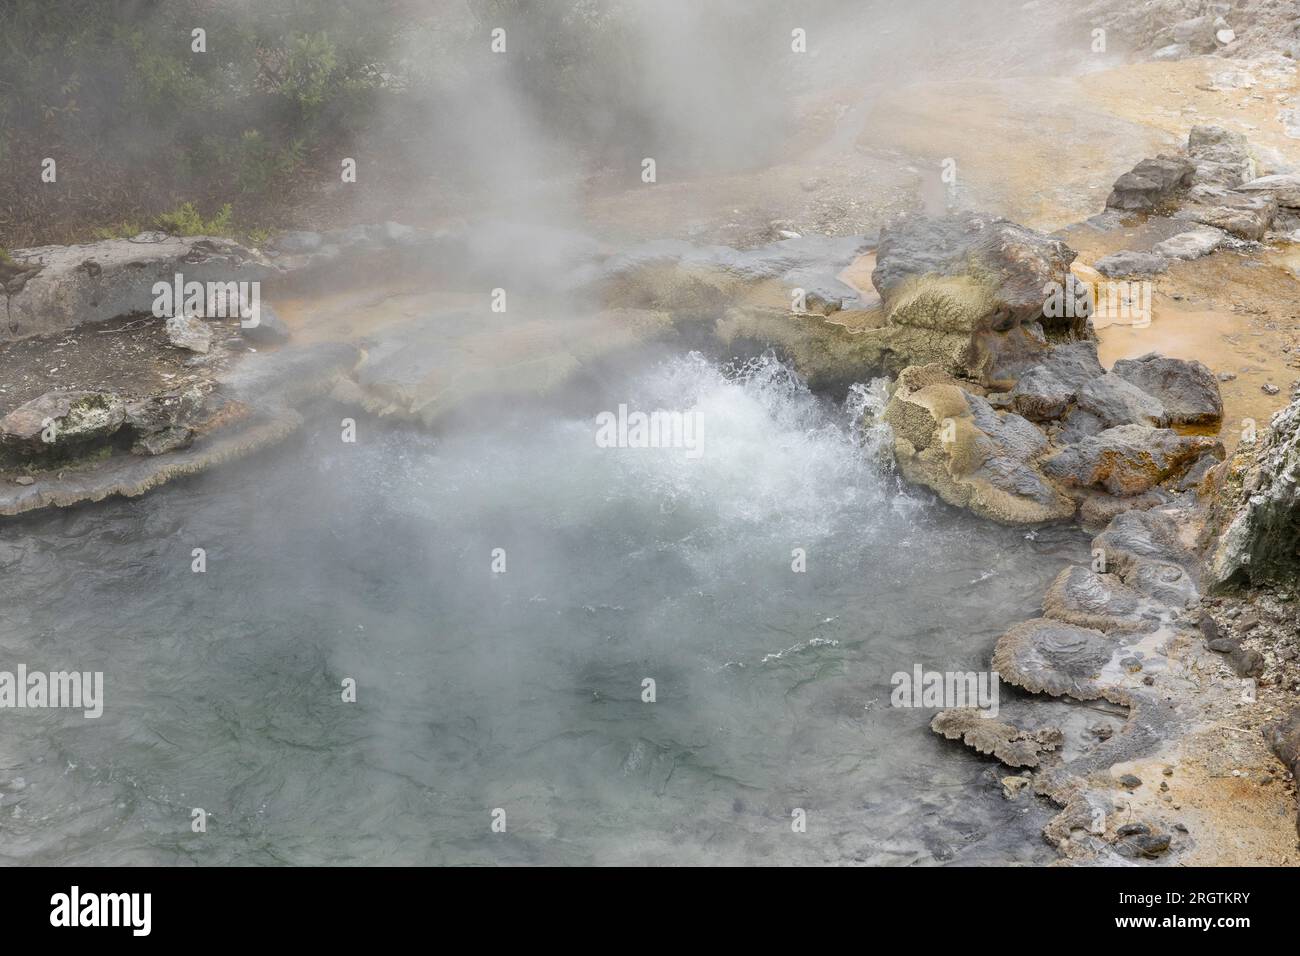 Fumerolles géothermiques à Furnas Hot Springs, sur l'île de Sao Miguel aux Açores, Portugal Banque D'Images